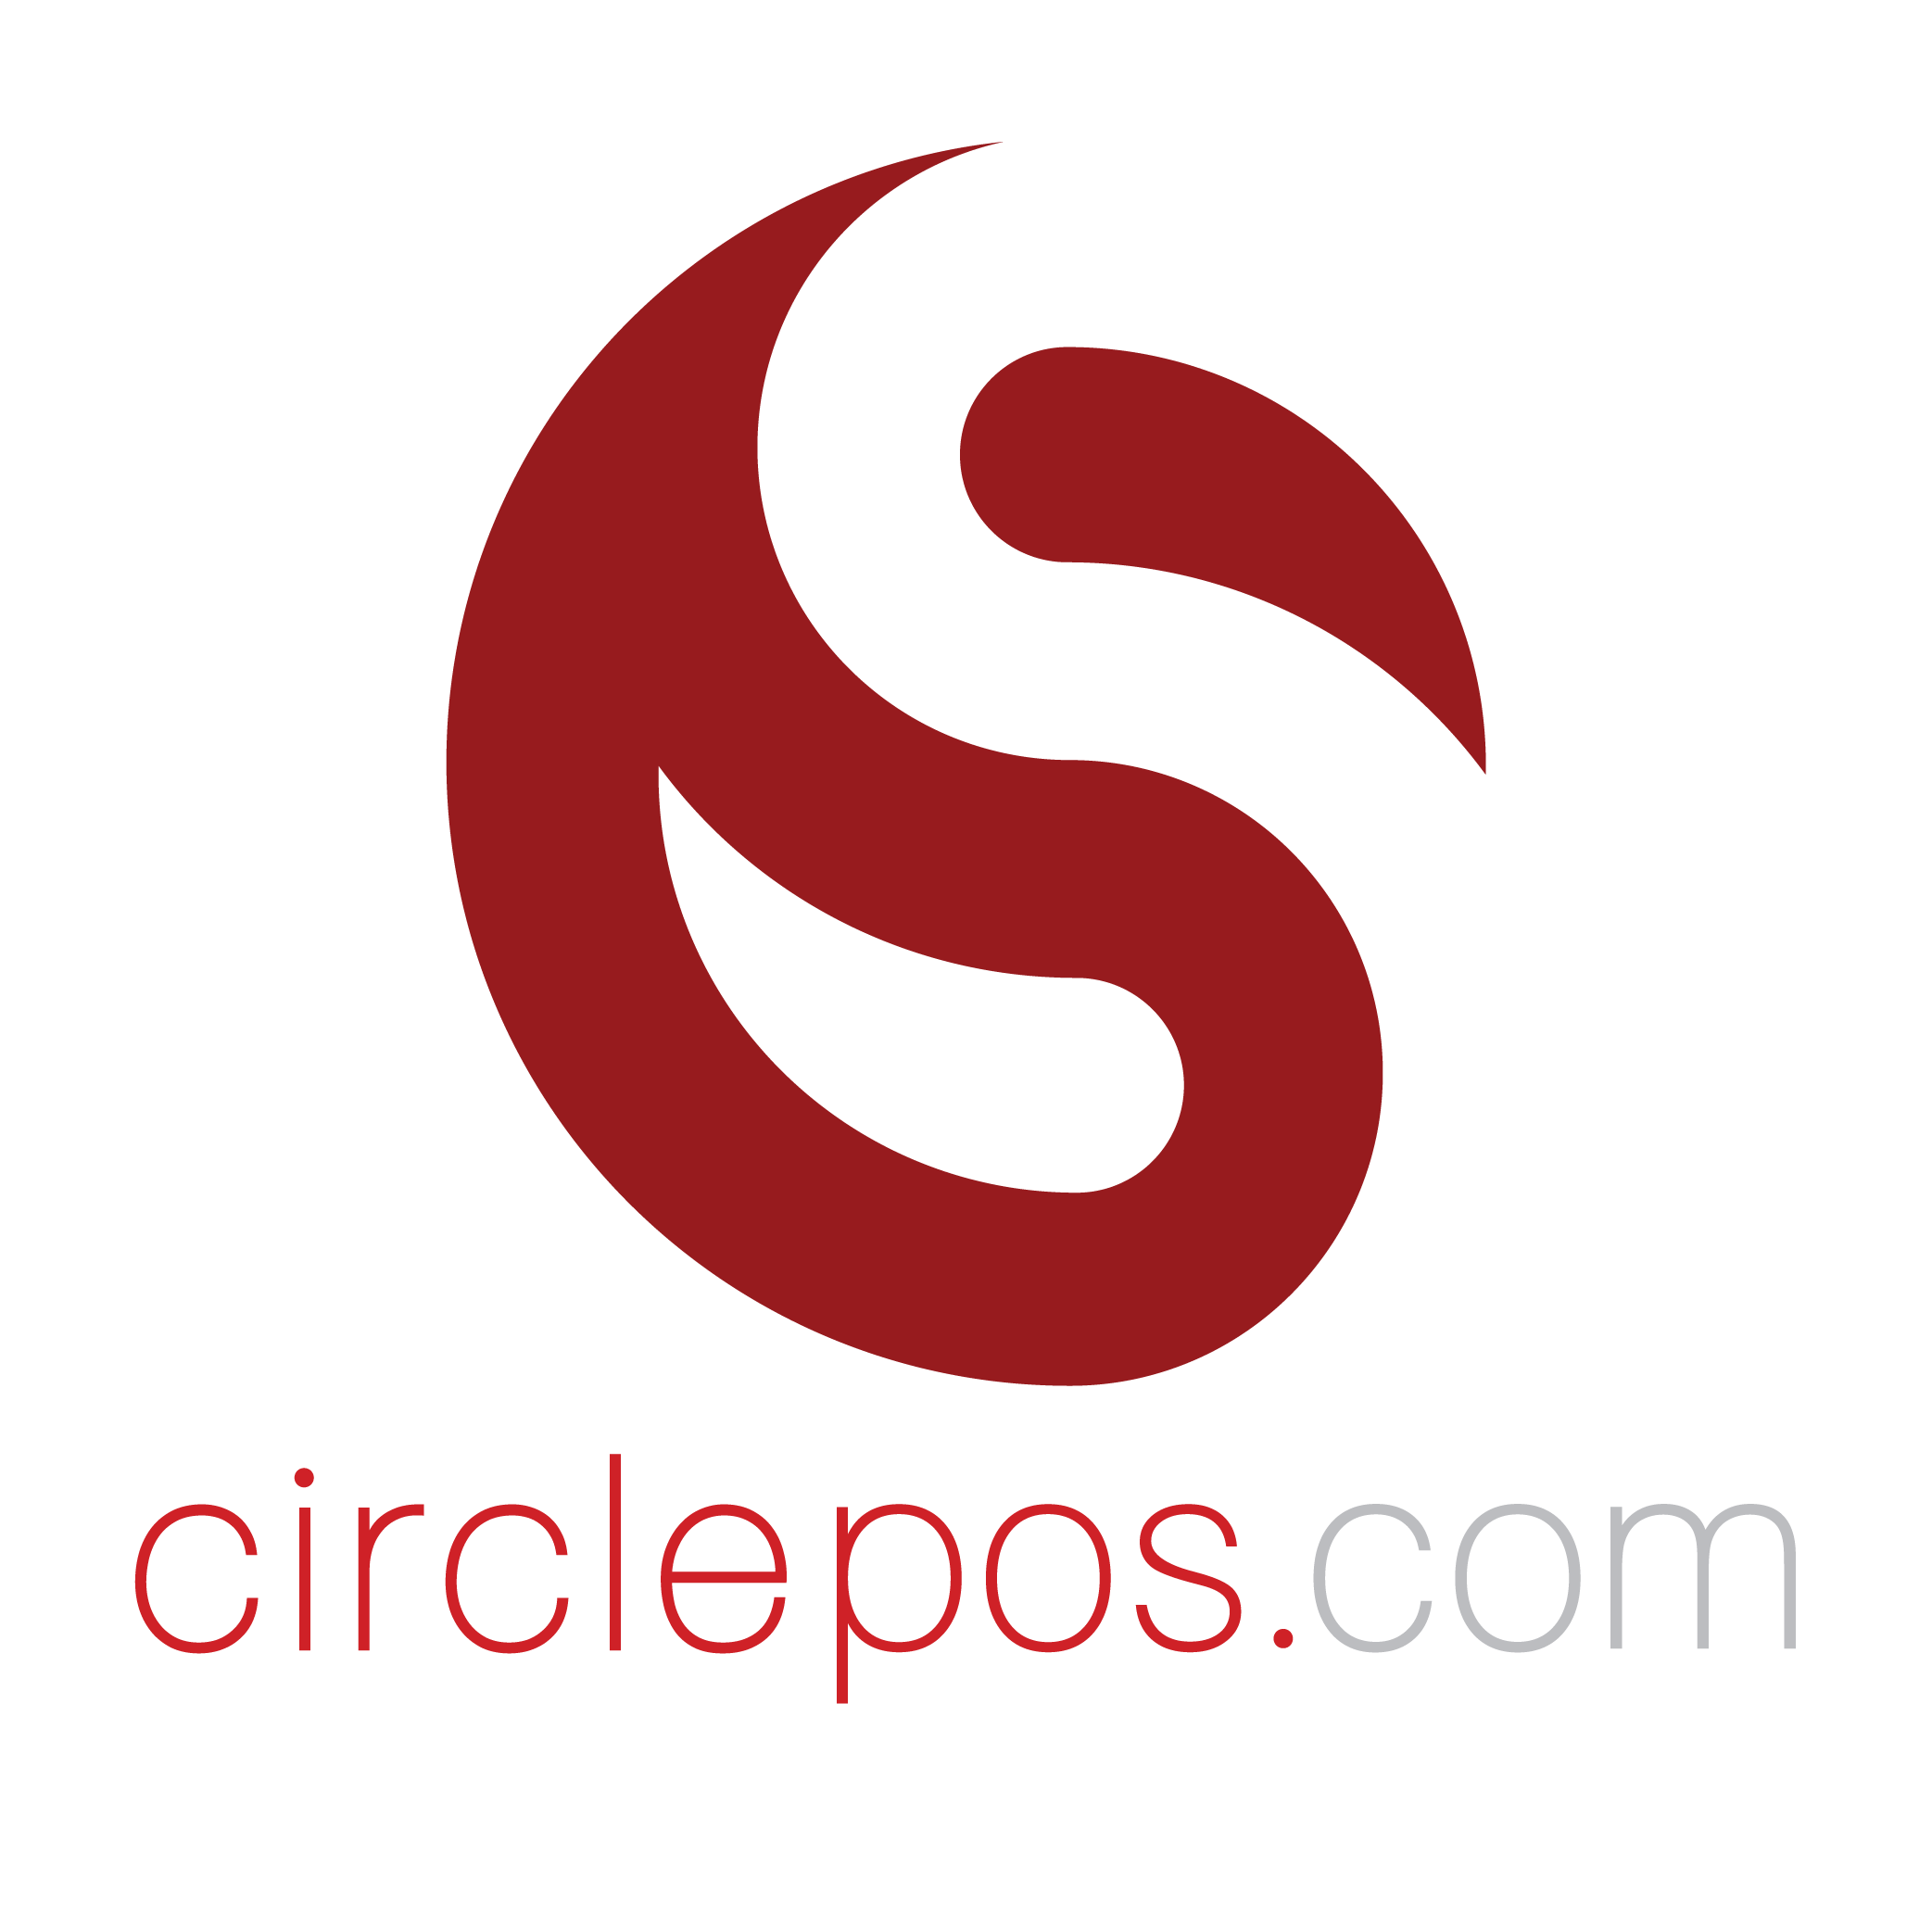 CirclePOS.com logo